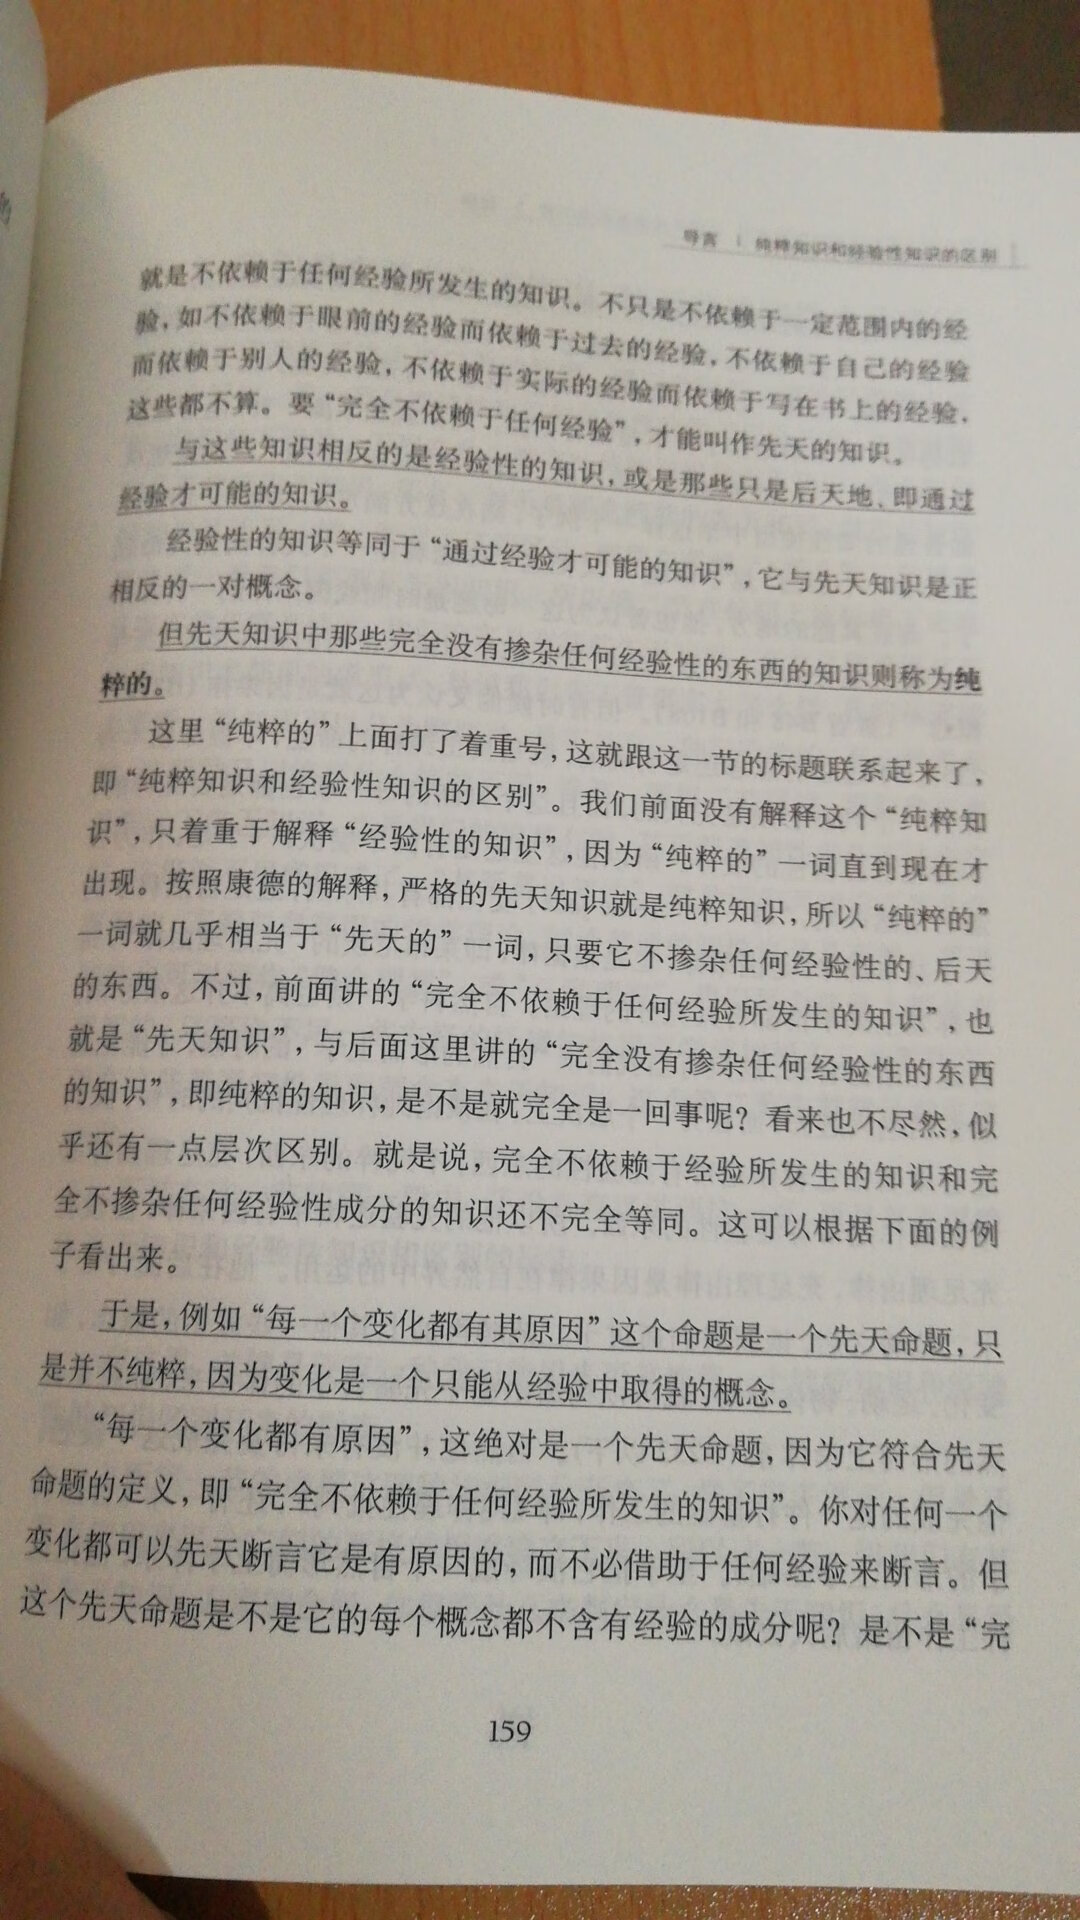 等了好久这个书终于优惠了，邓晓芒教授功力深厚，句读非常有意义